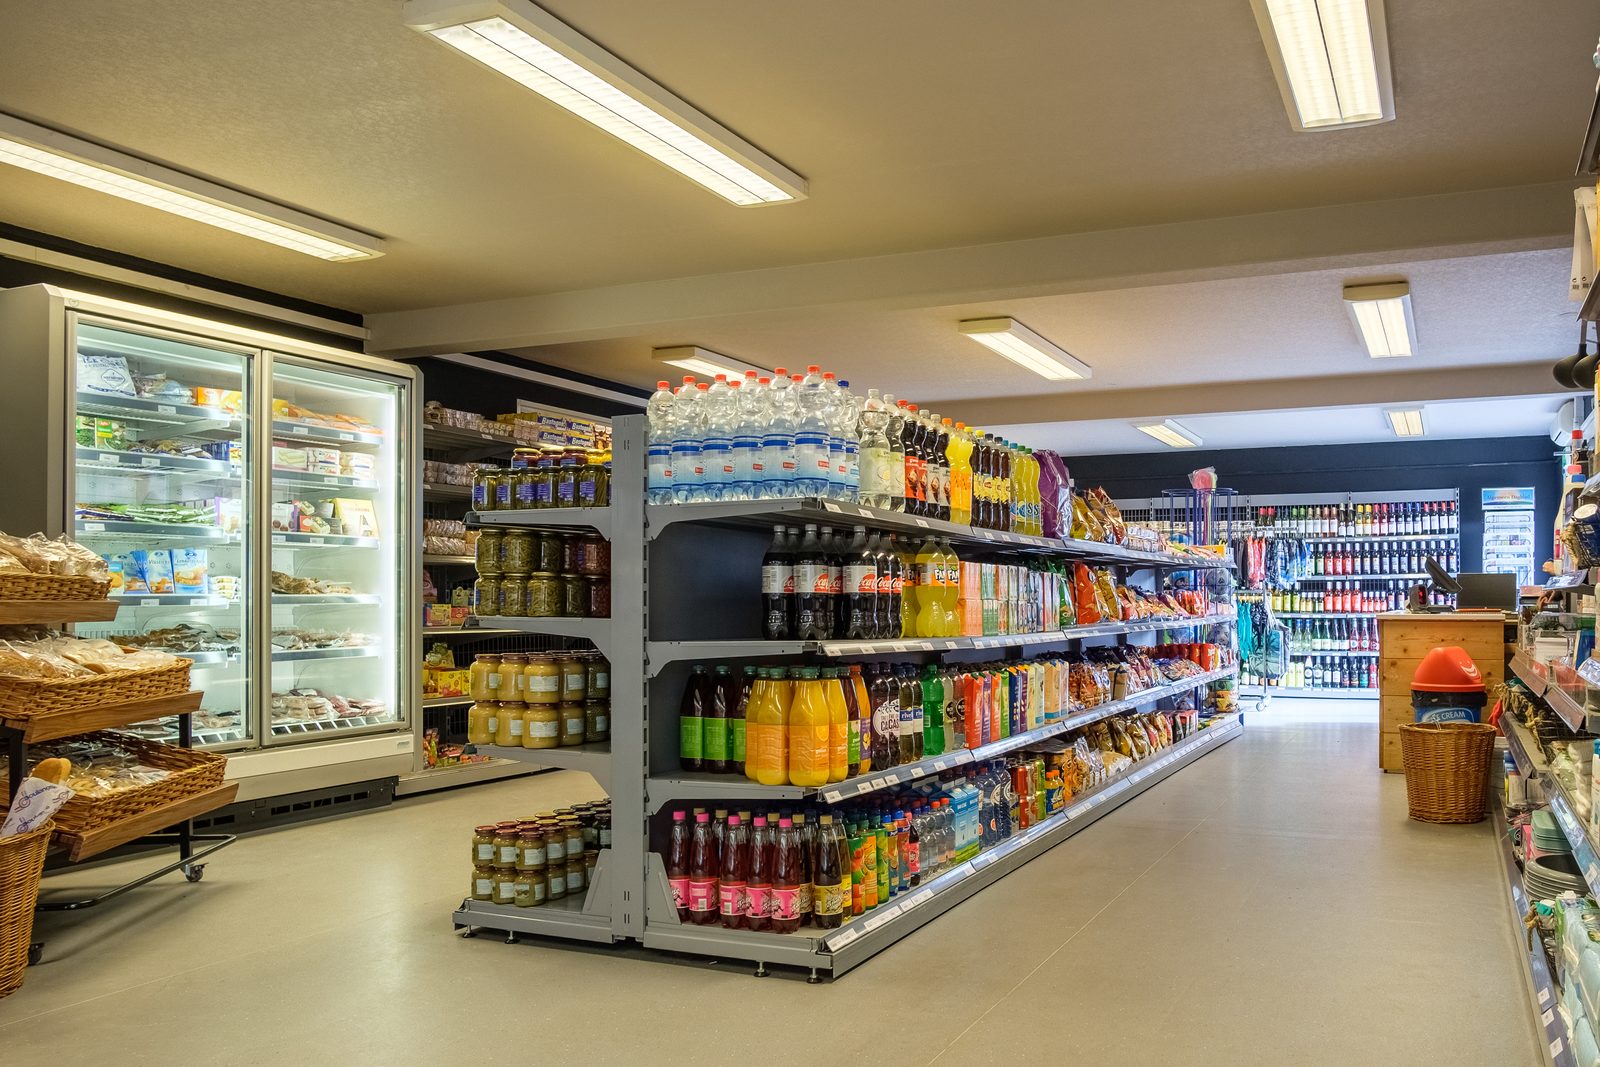 Vacature Medewerker supermarkt 2022